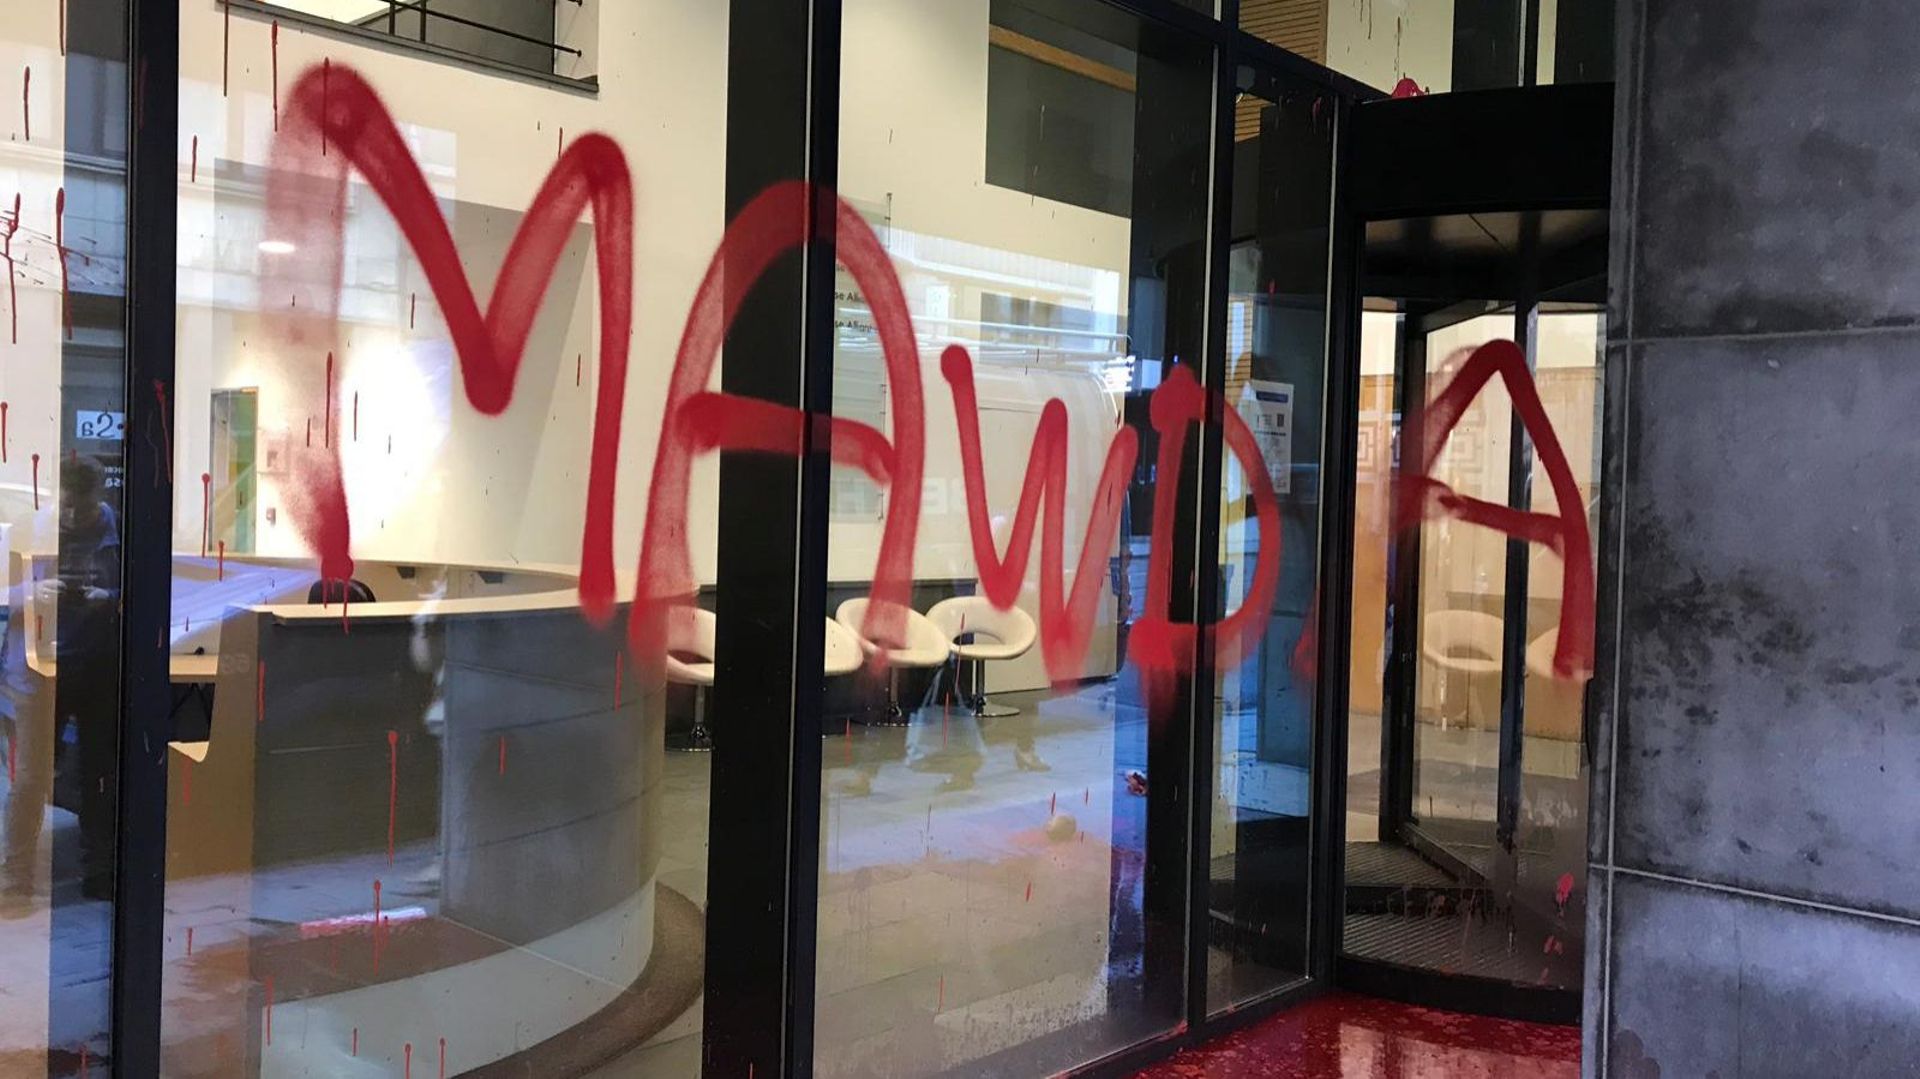 "Mawda, killed by NVA politics": la façade du siège de la N-VA vandalisée